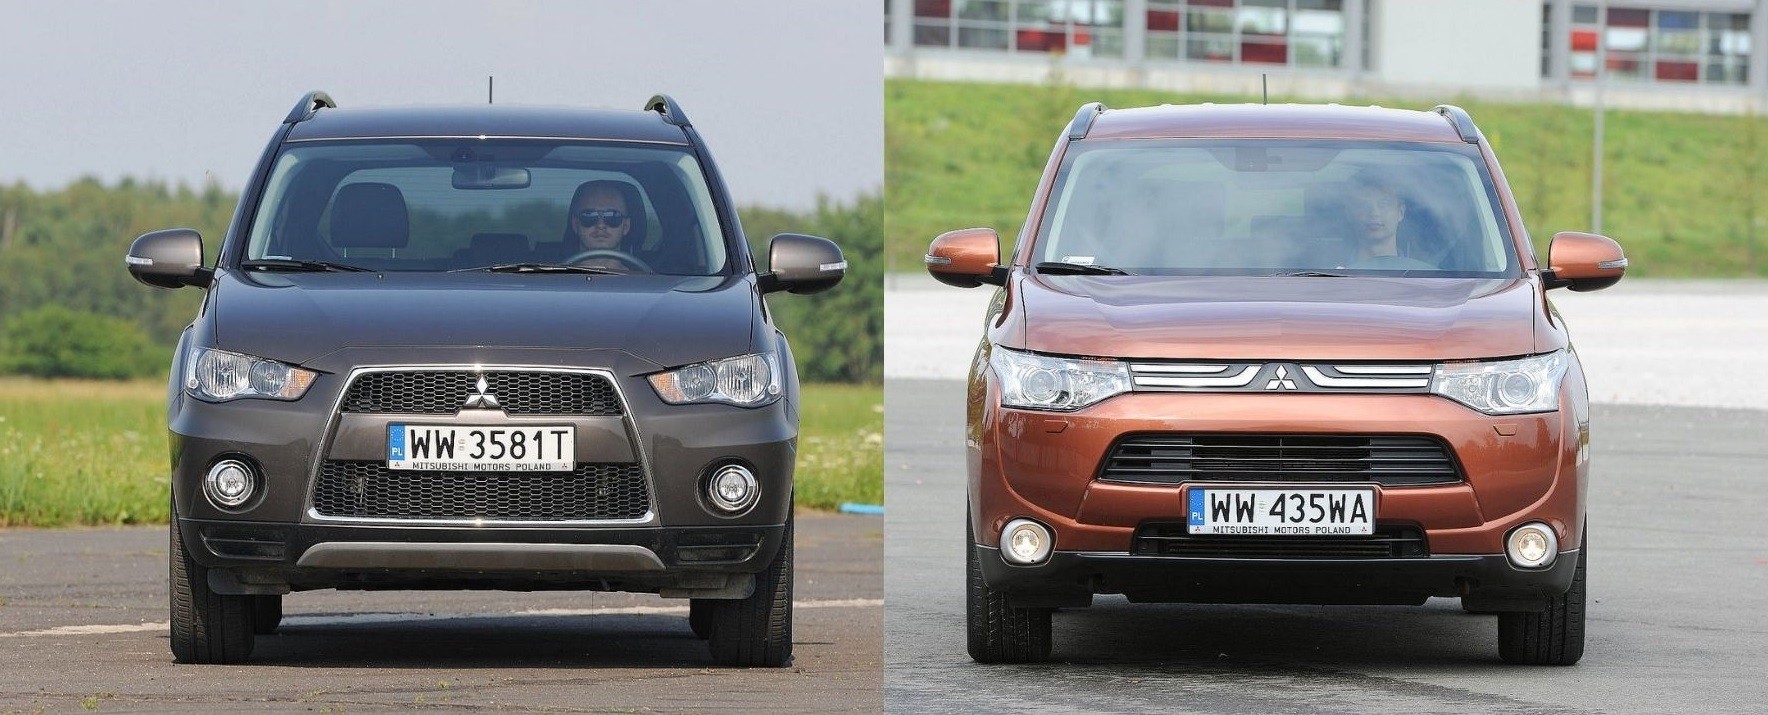 Używany Mitsubishi Outlander Ii I Outlander Iii - Którą Generację Wybrać?